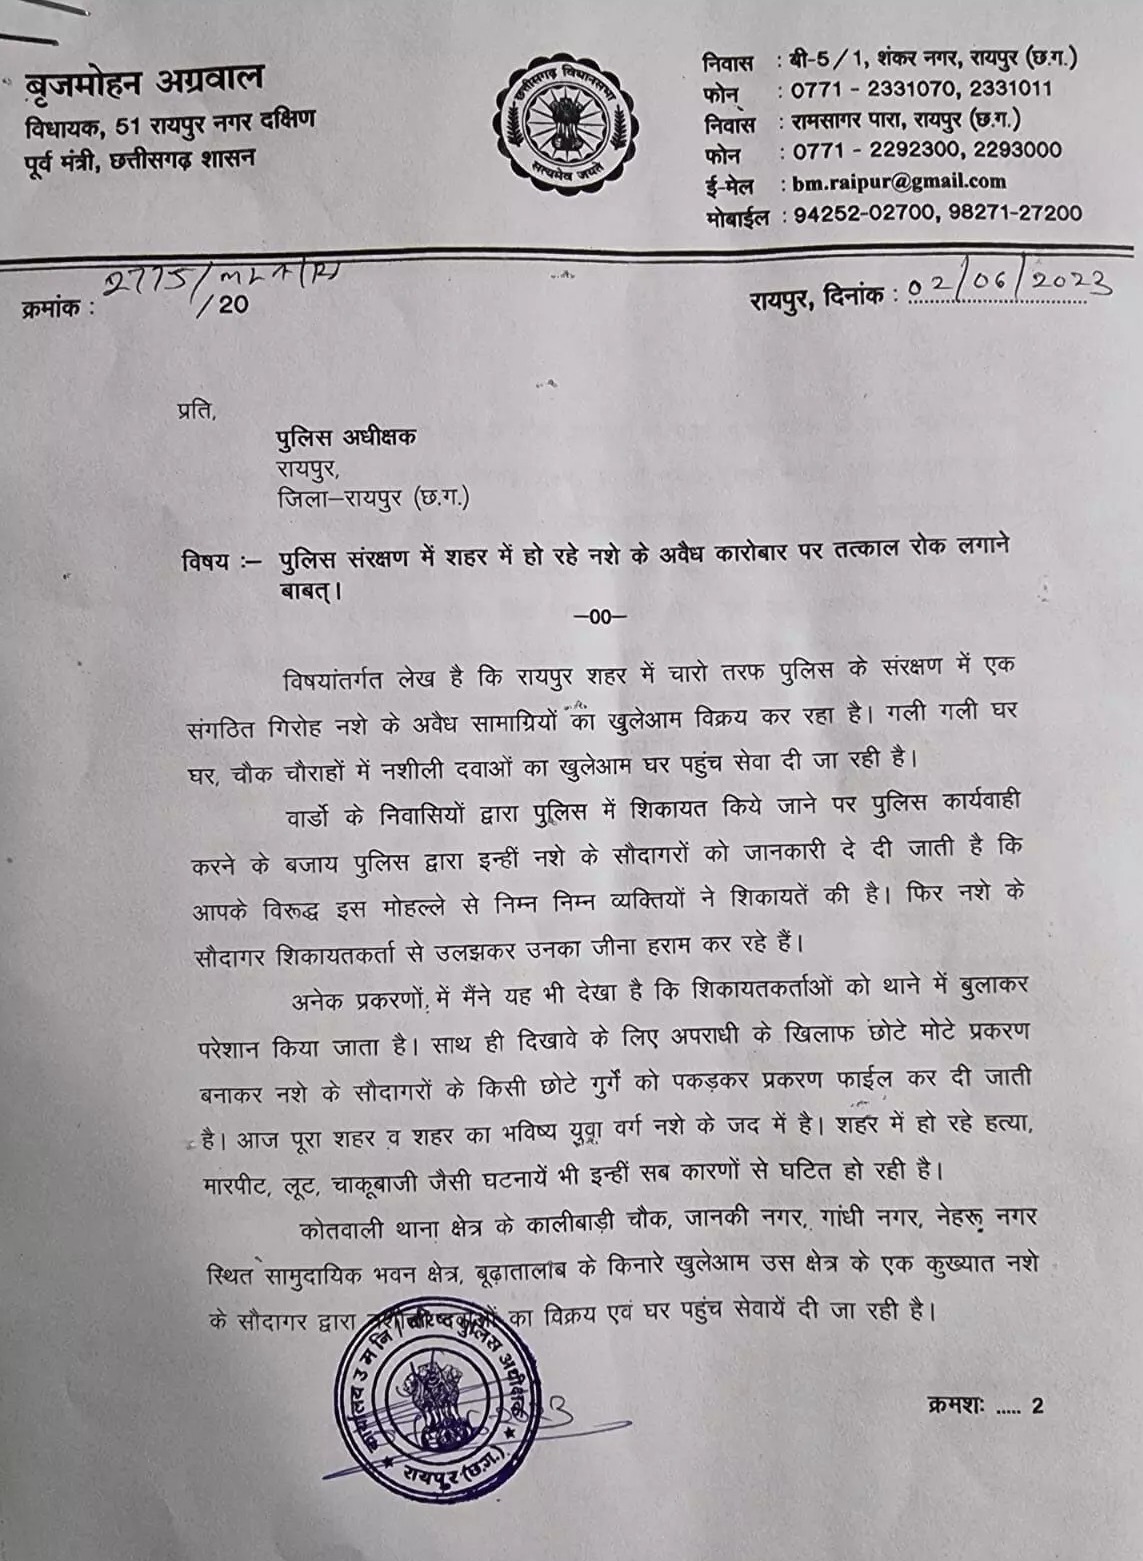 बृजमोहन अग्रवाल ने रायपुर एसपी को पत्र लिखकर पुलिस पर नशा तस्करों से मिलीभगत का आरोप लगाया